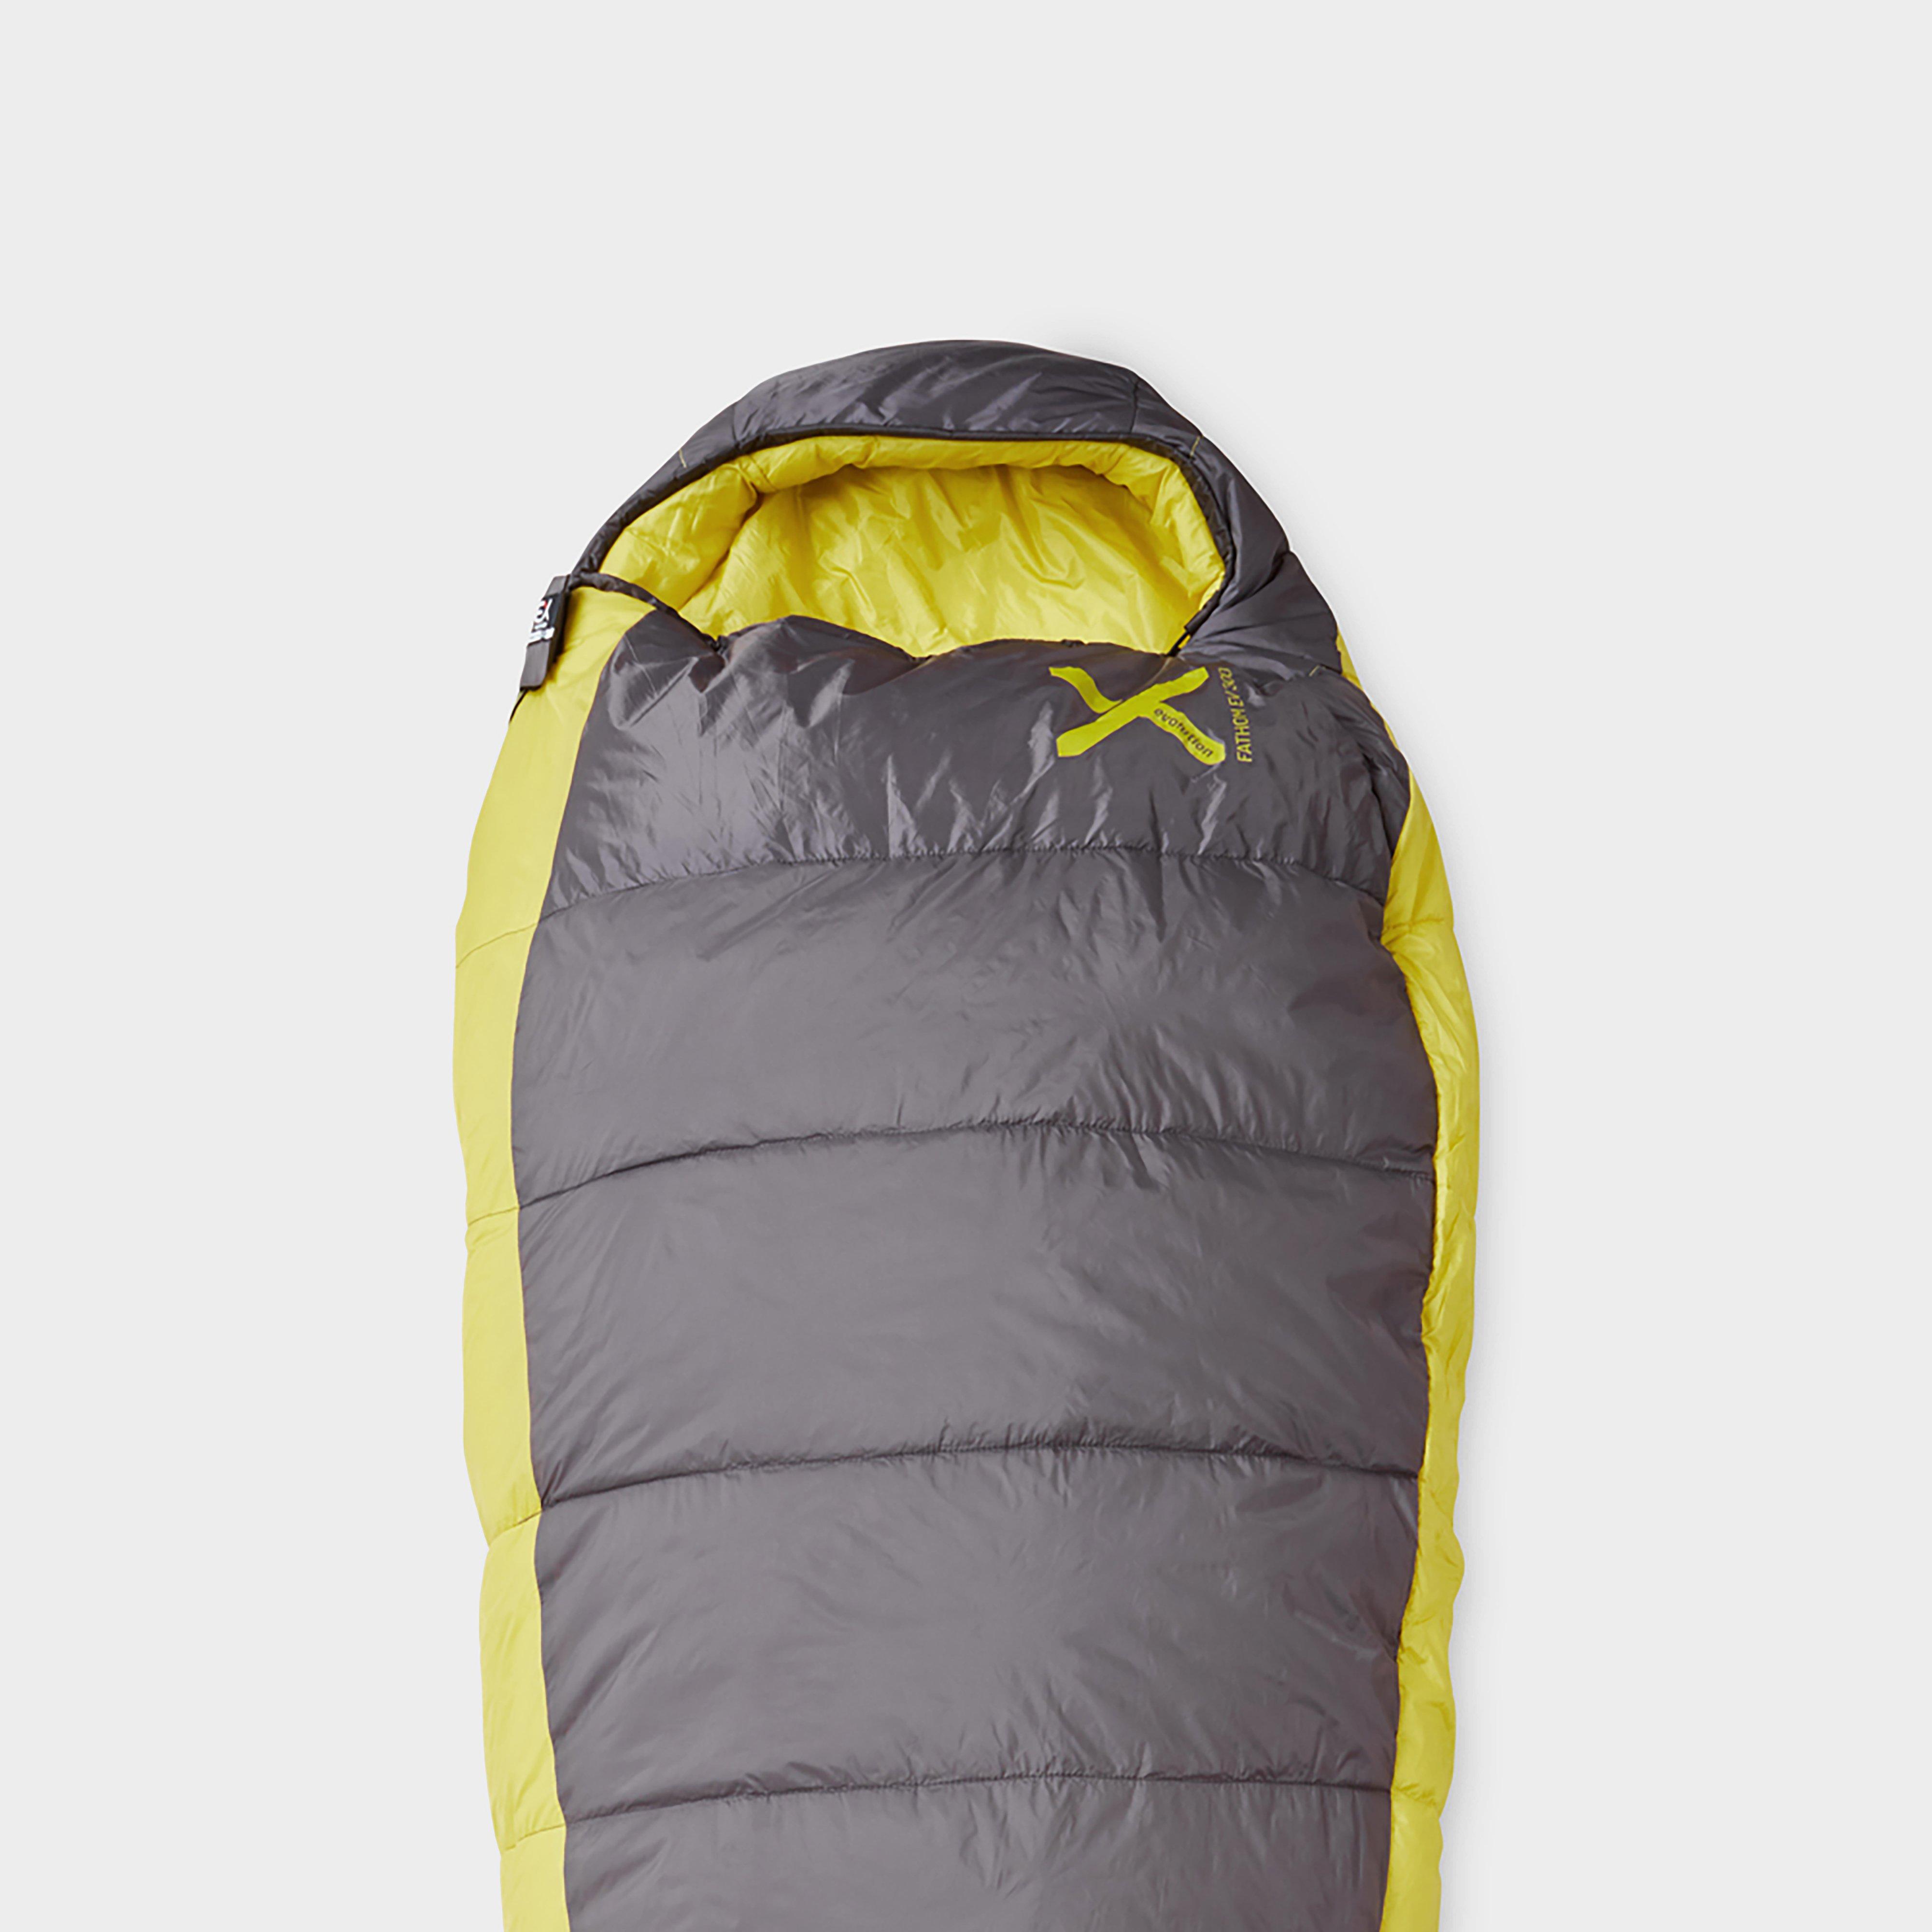 Rab Solar 4 XL Sleeping Bag Review